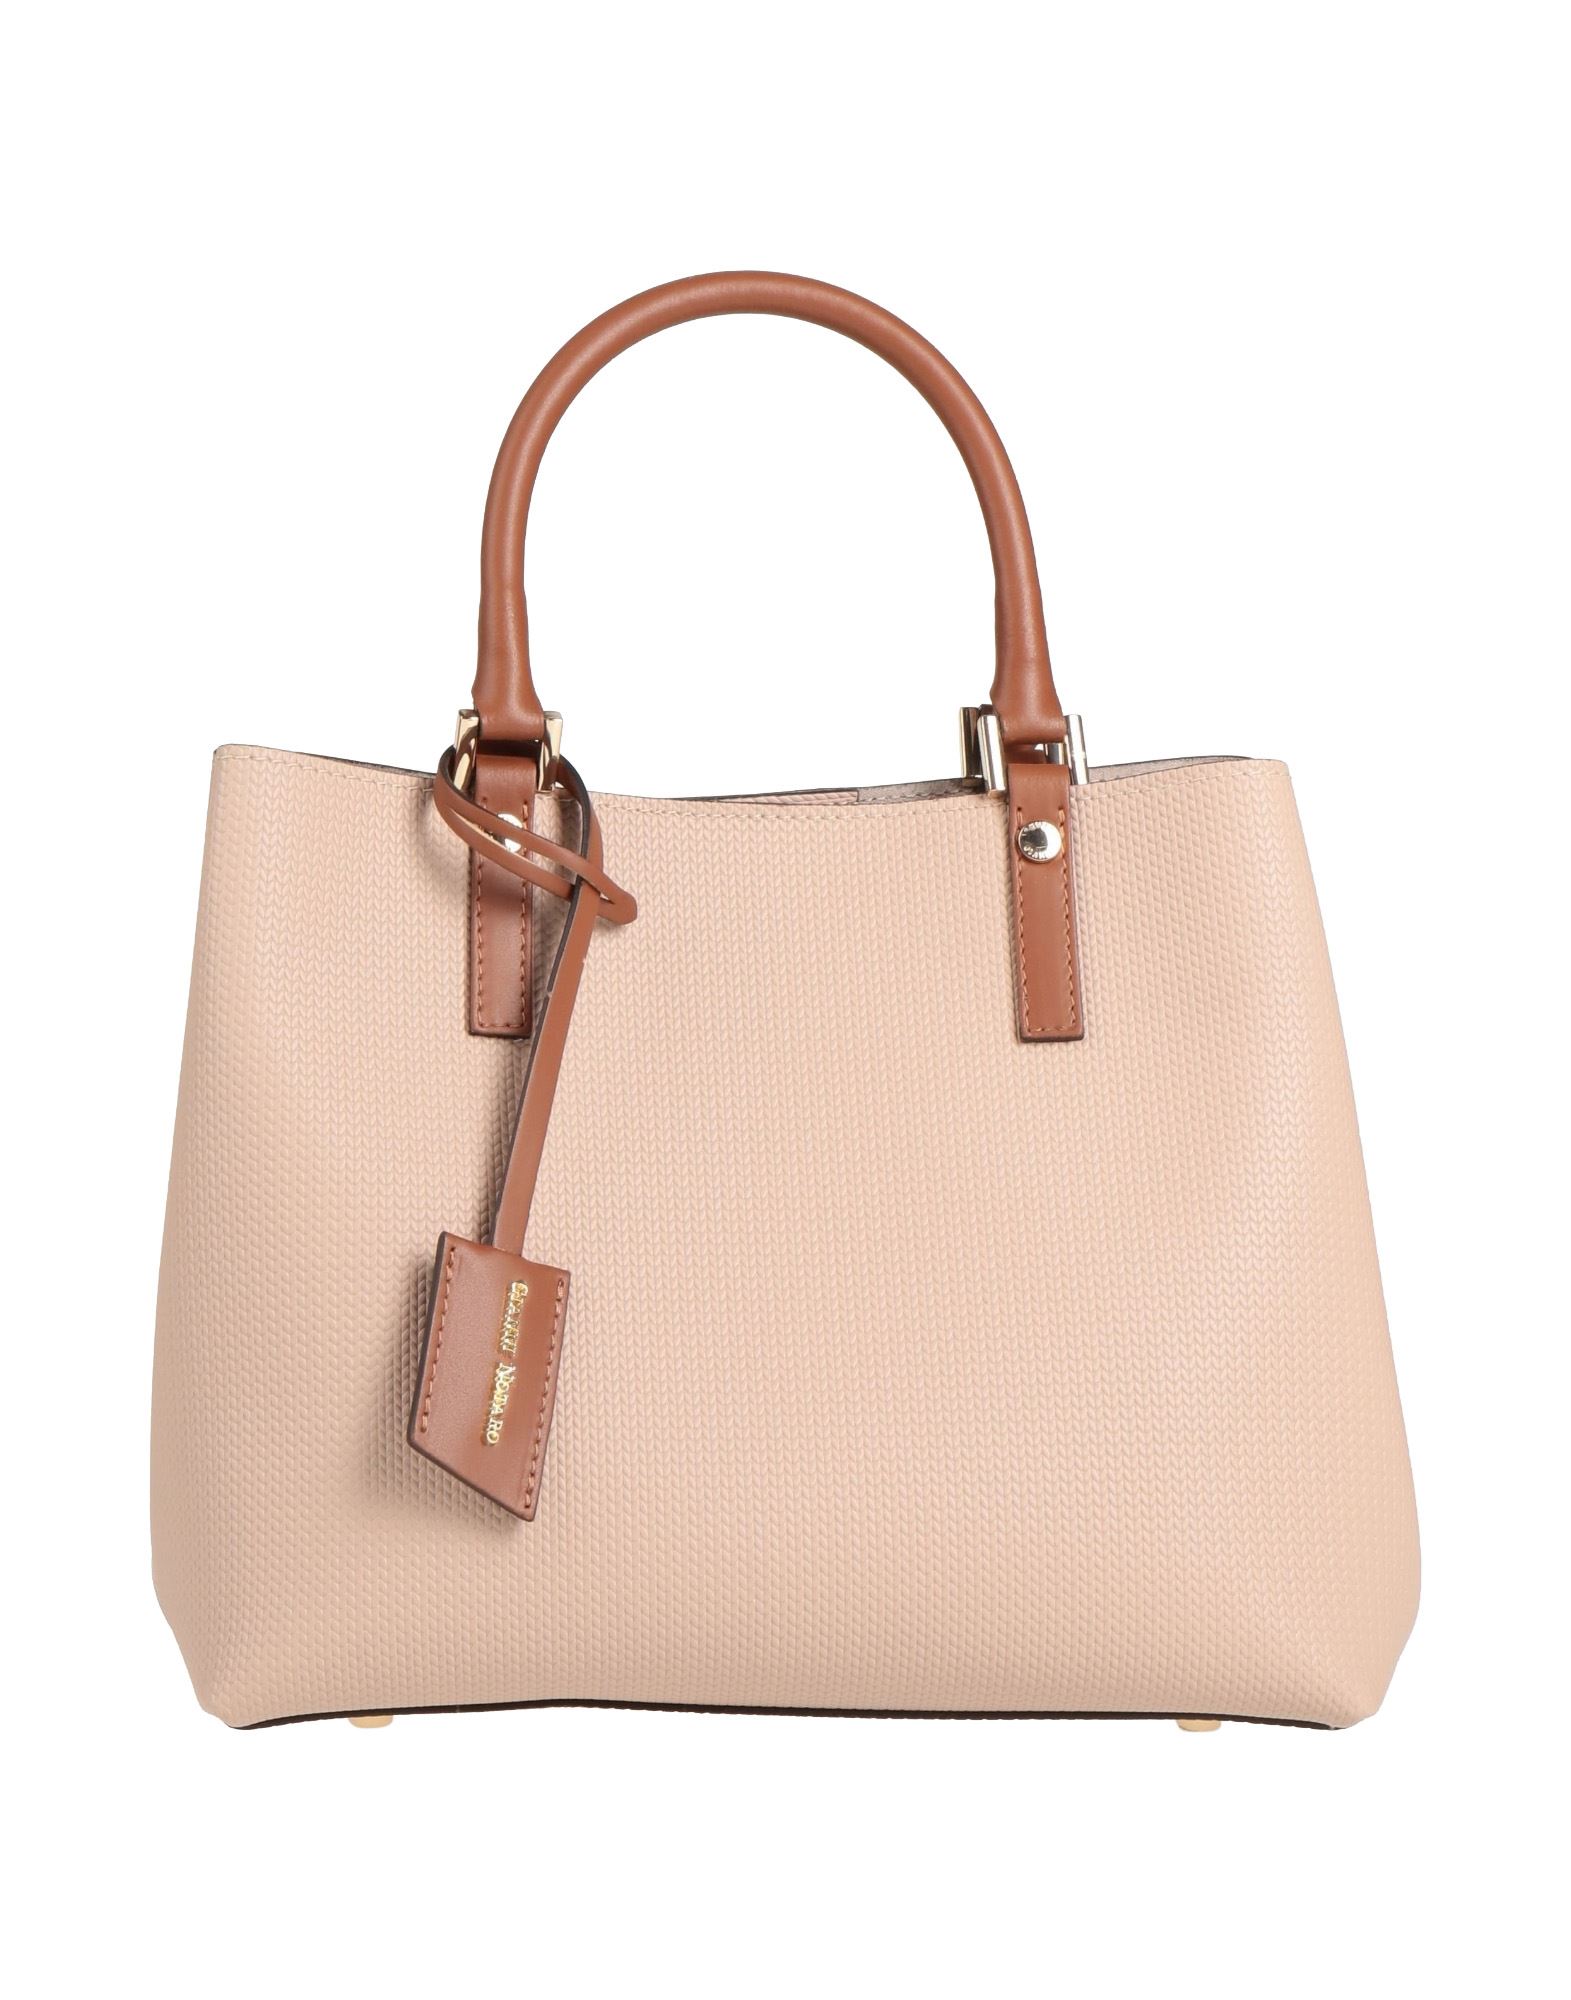 Gianni Notaro C.j. Handbags In Pink